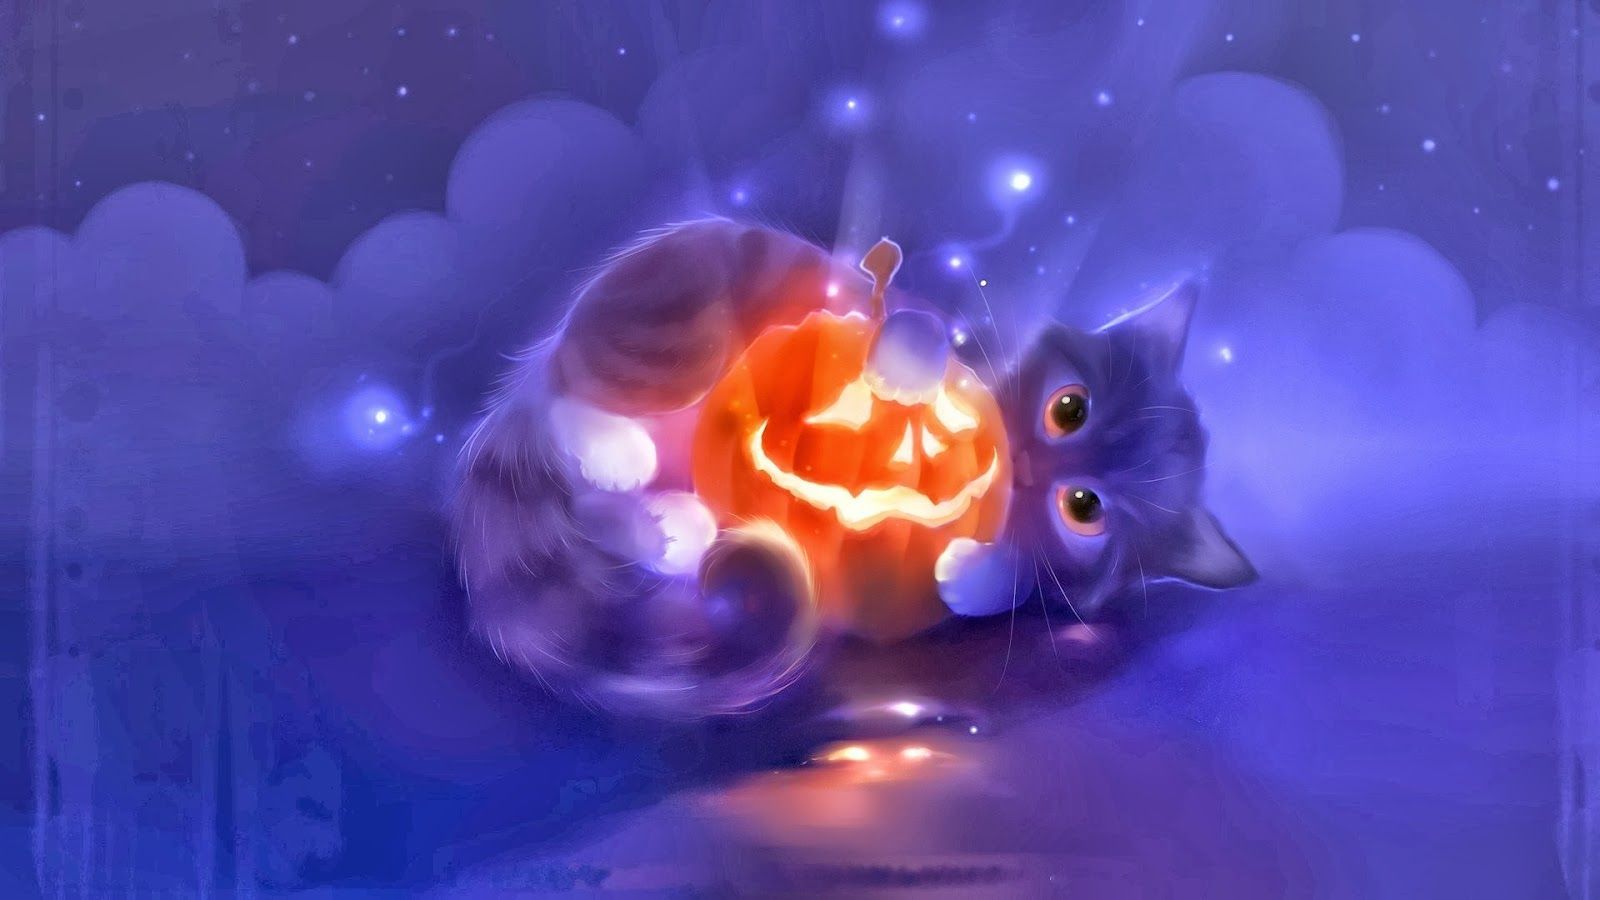 Halloween cats and kittens. Halloween Cute Cat Animal Pumpkin Lantern Widescreen HD Wallpaper x5. Halloween wallpaper, Cute wallpaper, Cute cat illustration